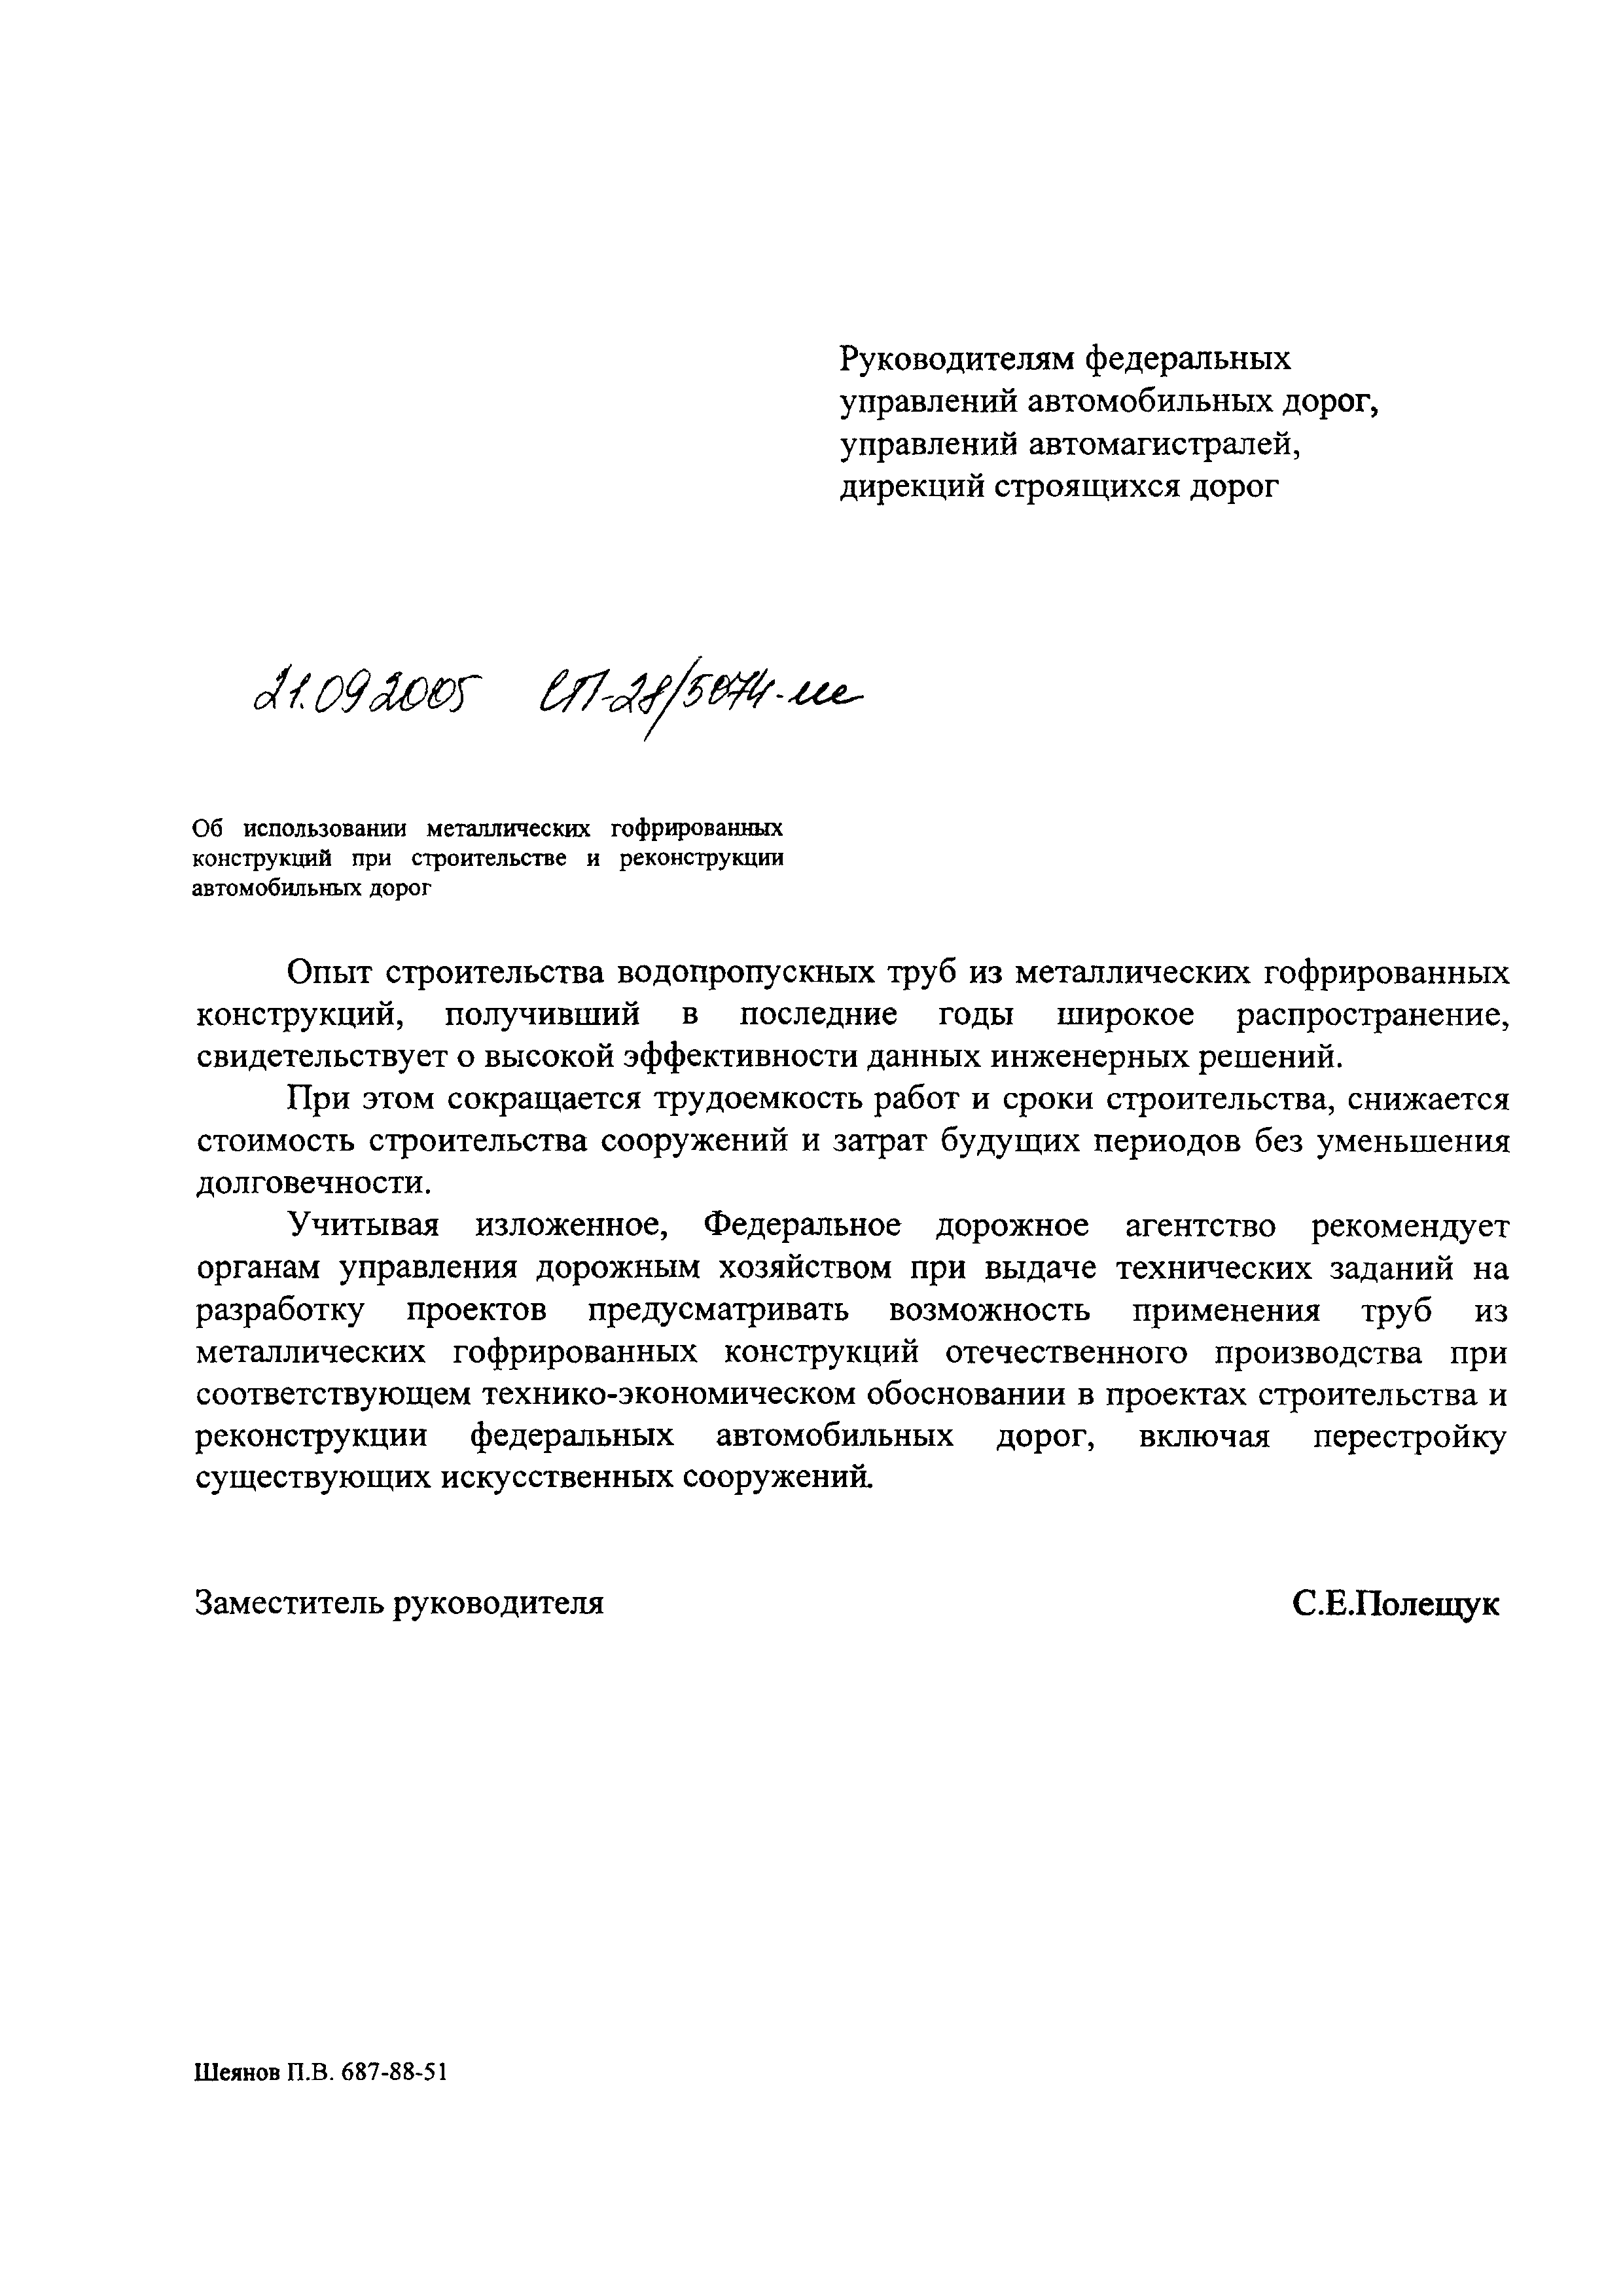 Письмо СП-28/5074-ИС